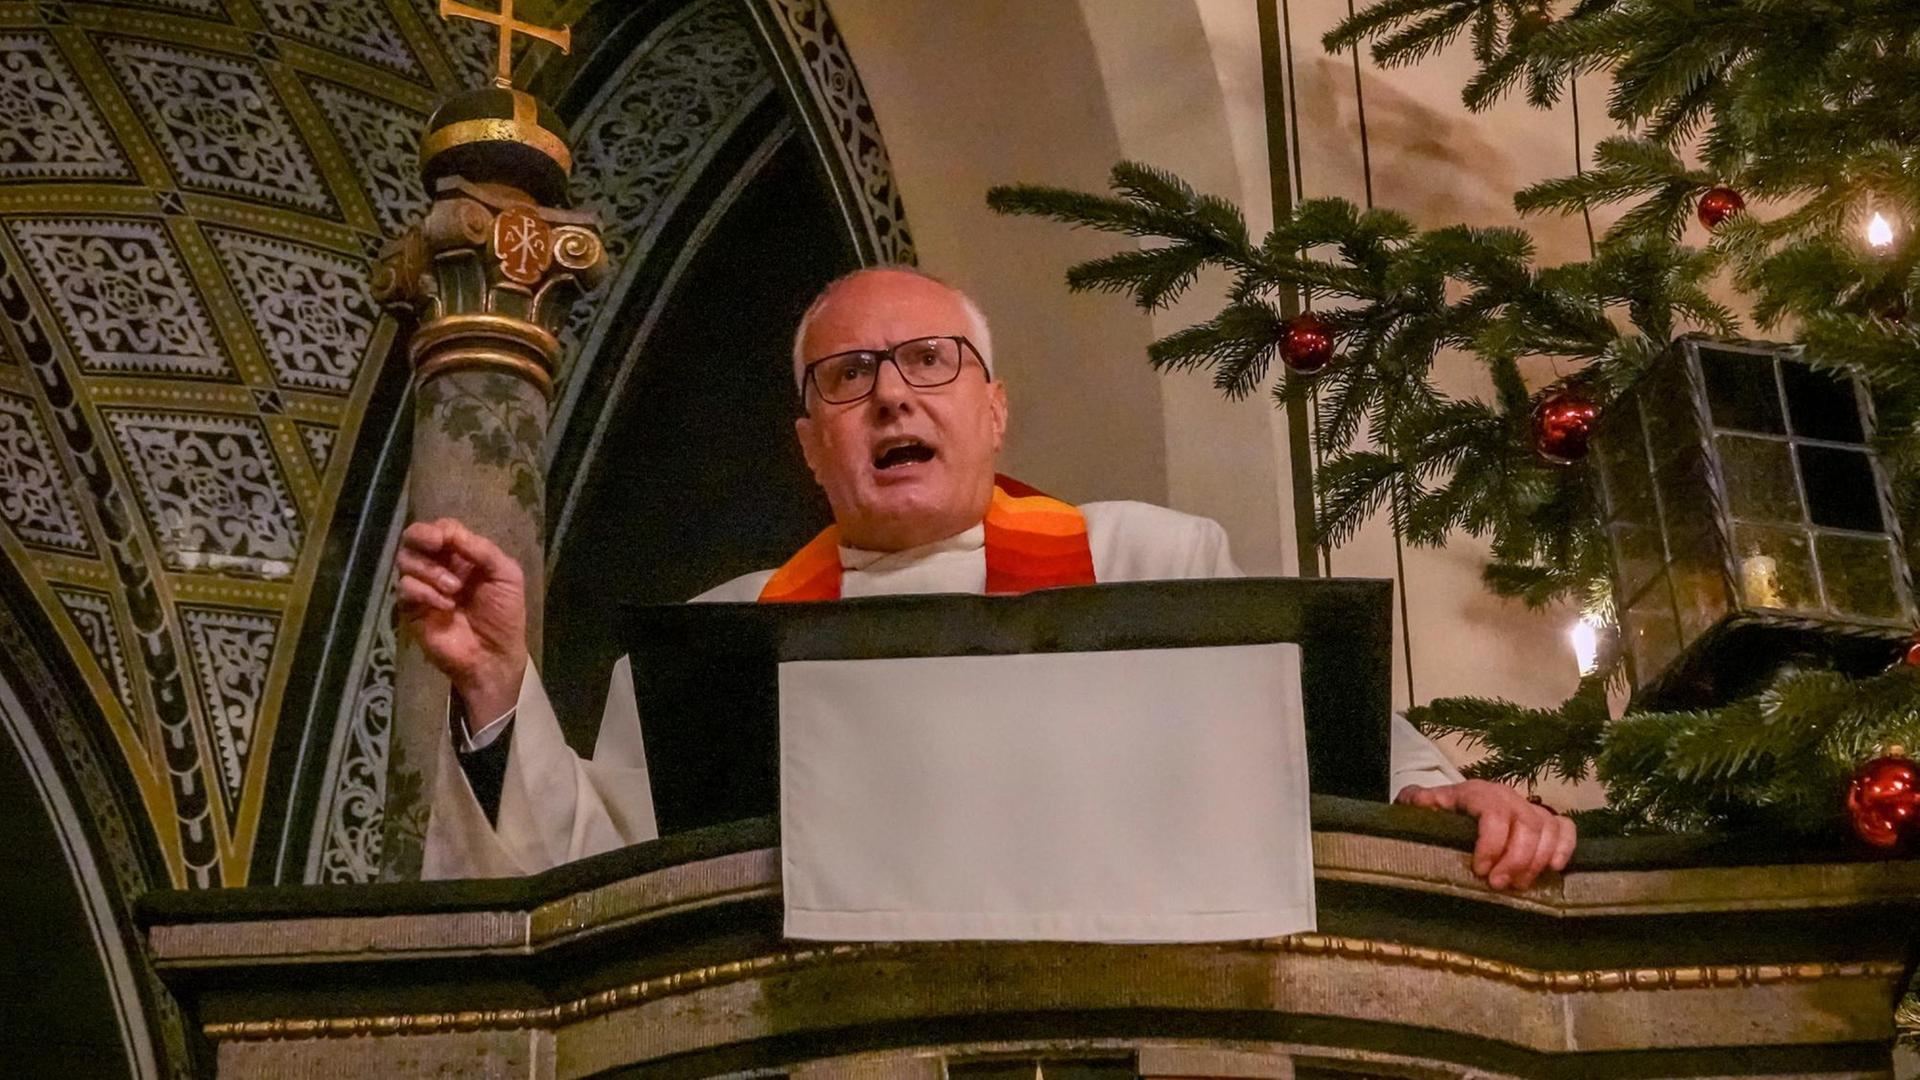 Pfarrer Steffen Reiche während seiner vieldiskutierten Predigt an Weihnachten 2017 in Berlin-Nikolassee